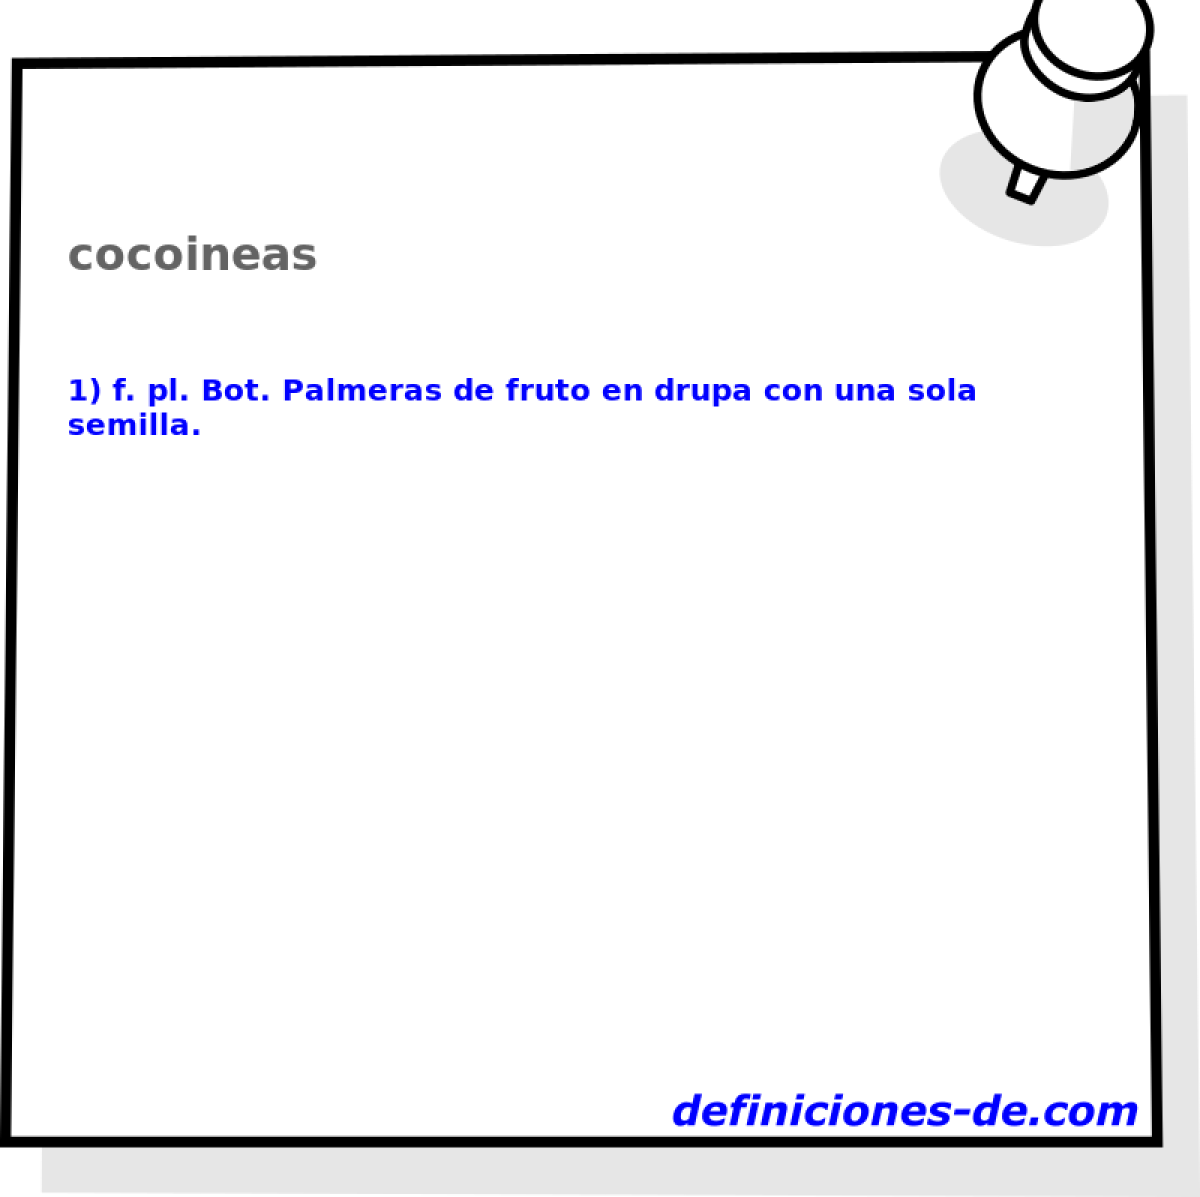 cocoineas 